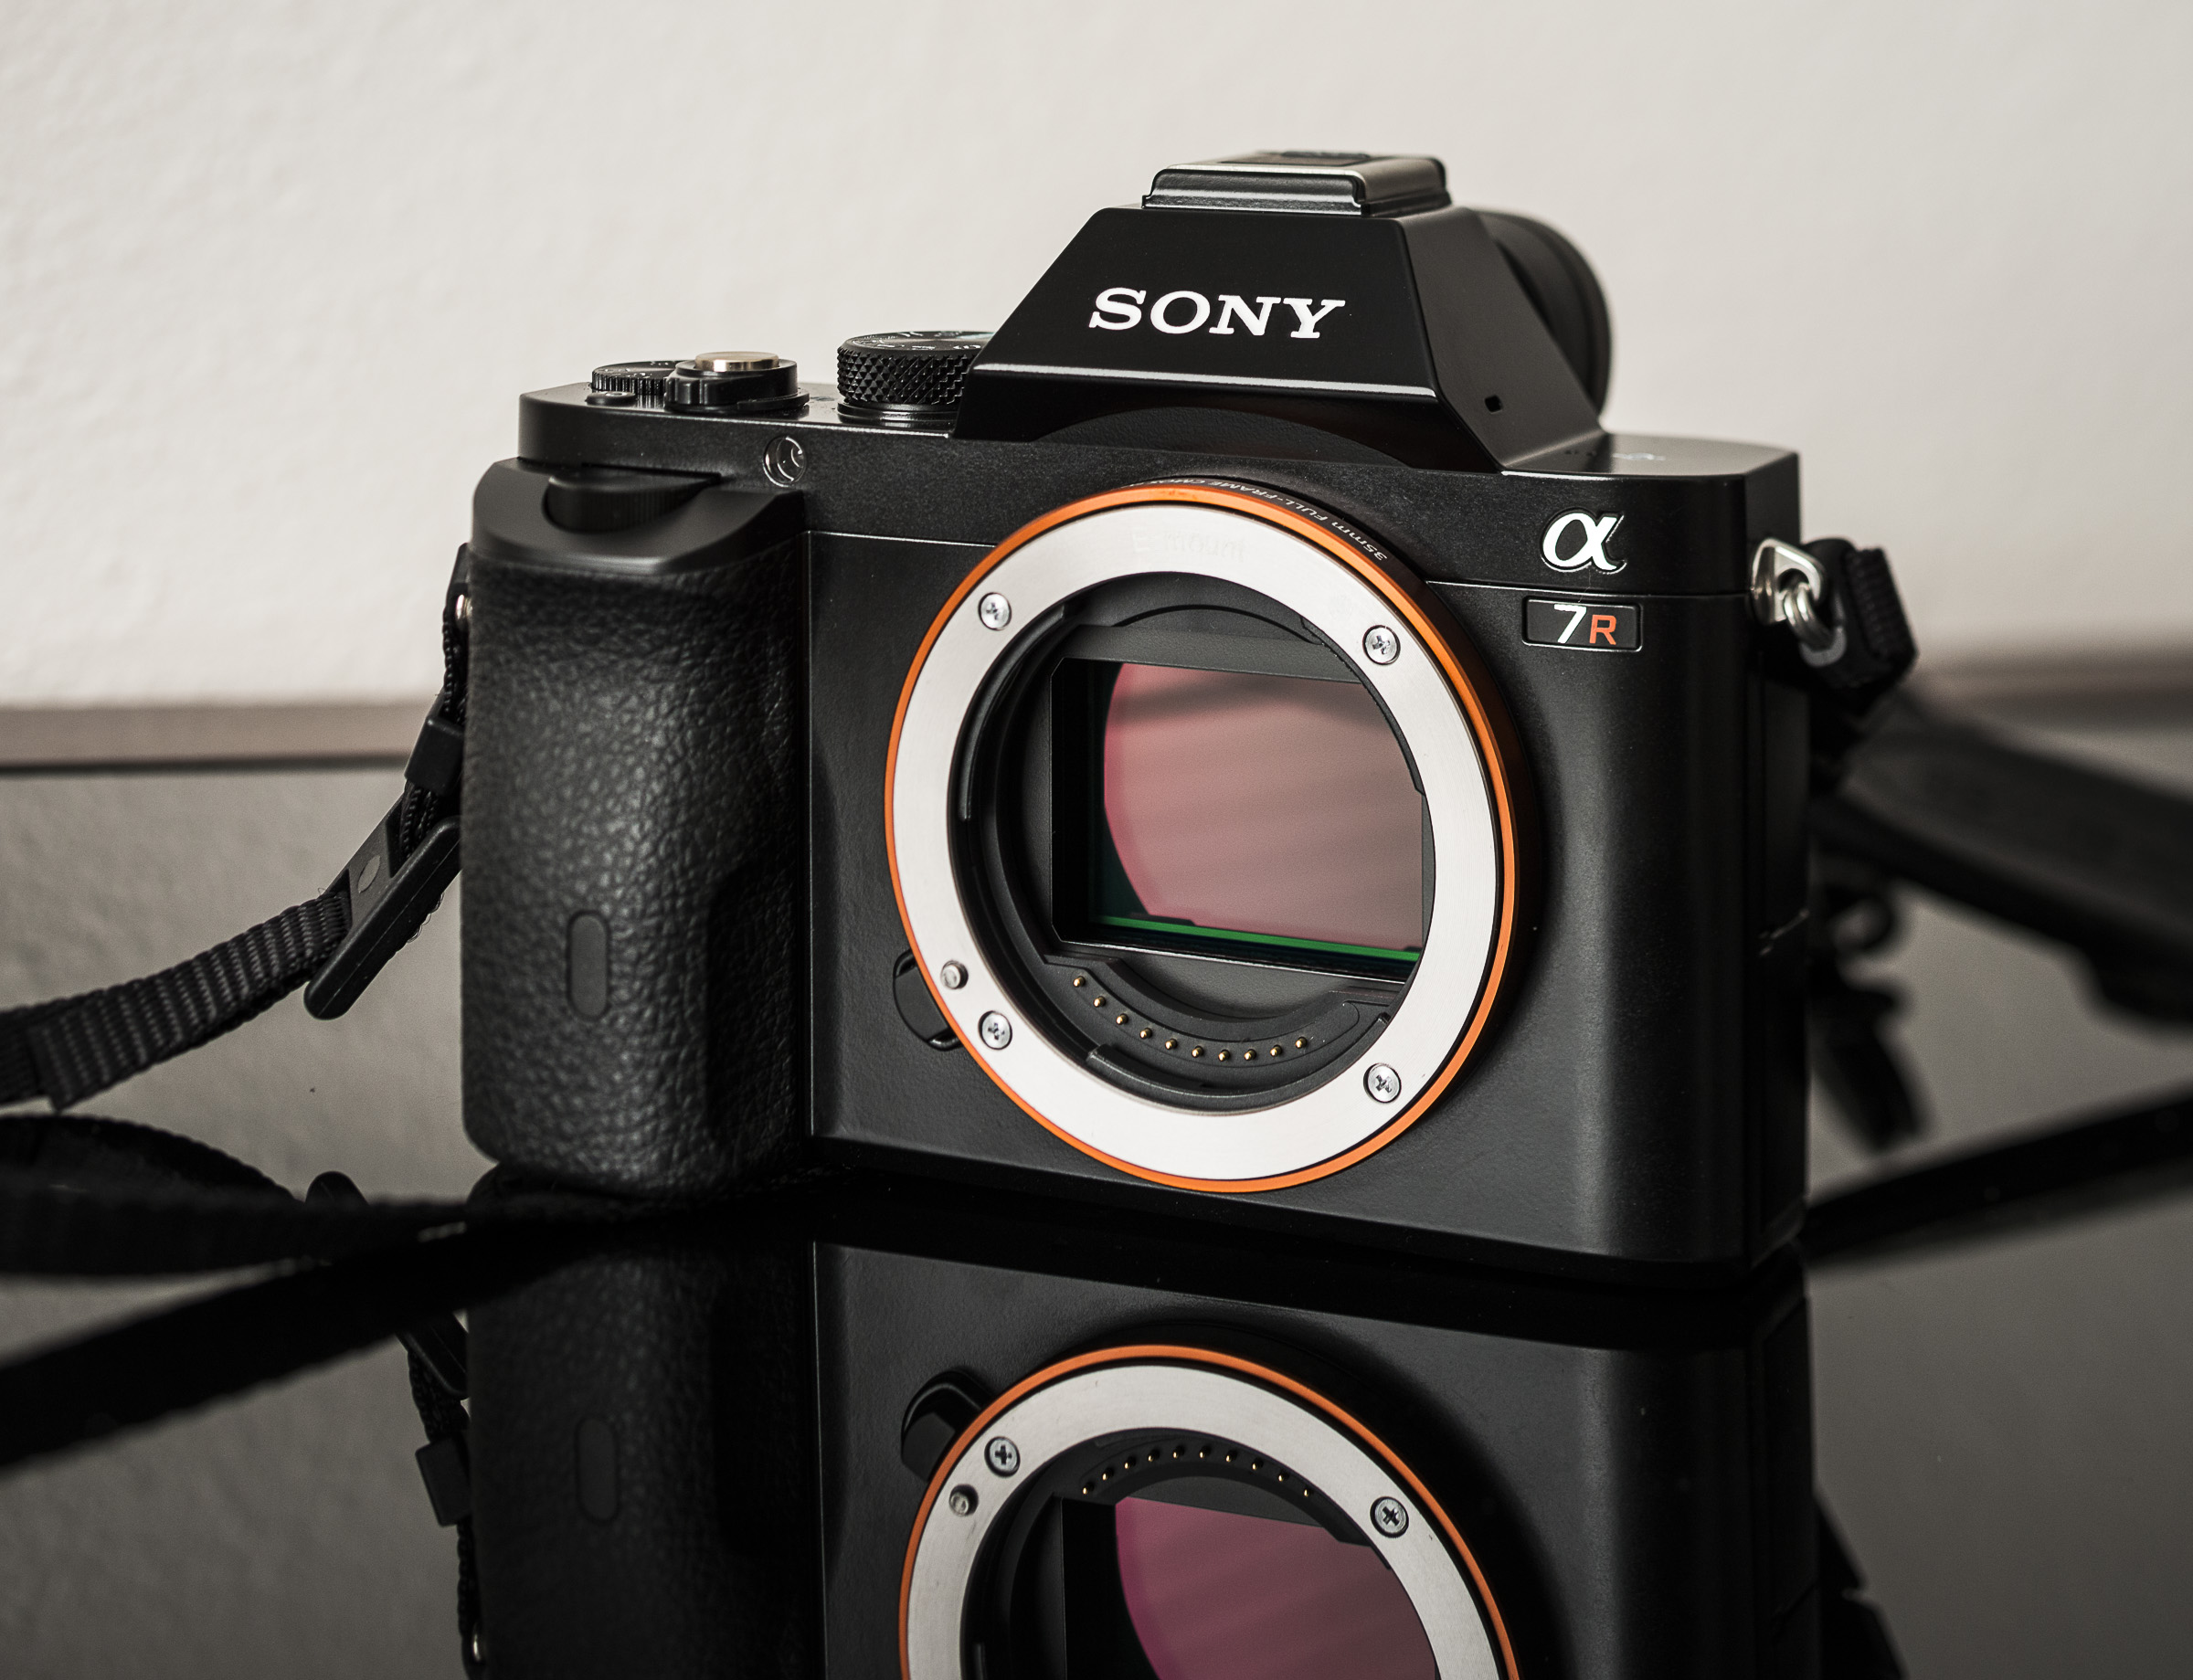 Review of the Sony α7R | Blue Sky Above and a Camera Kit